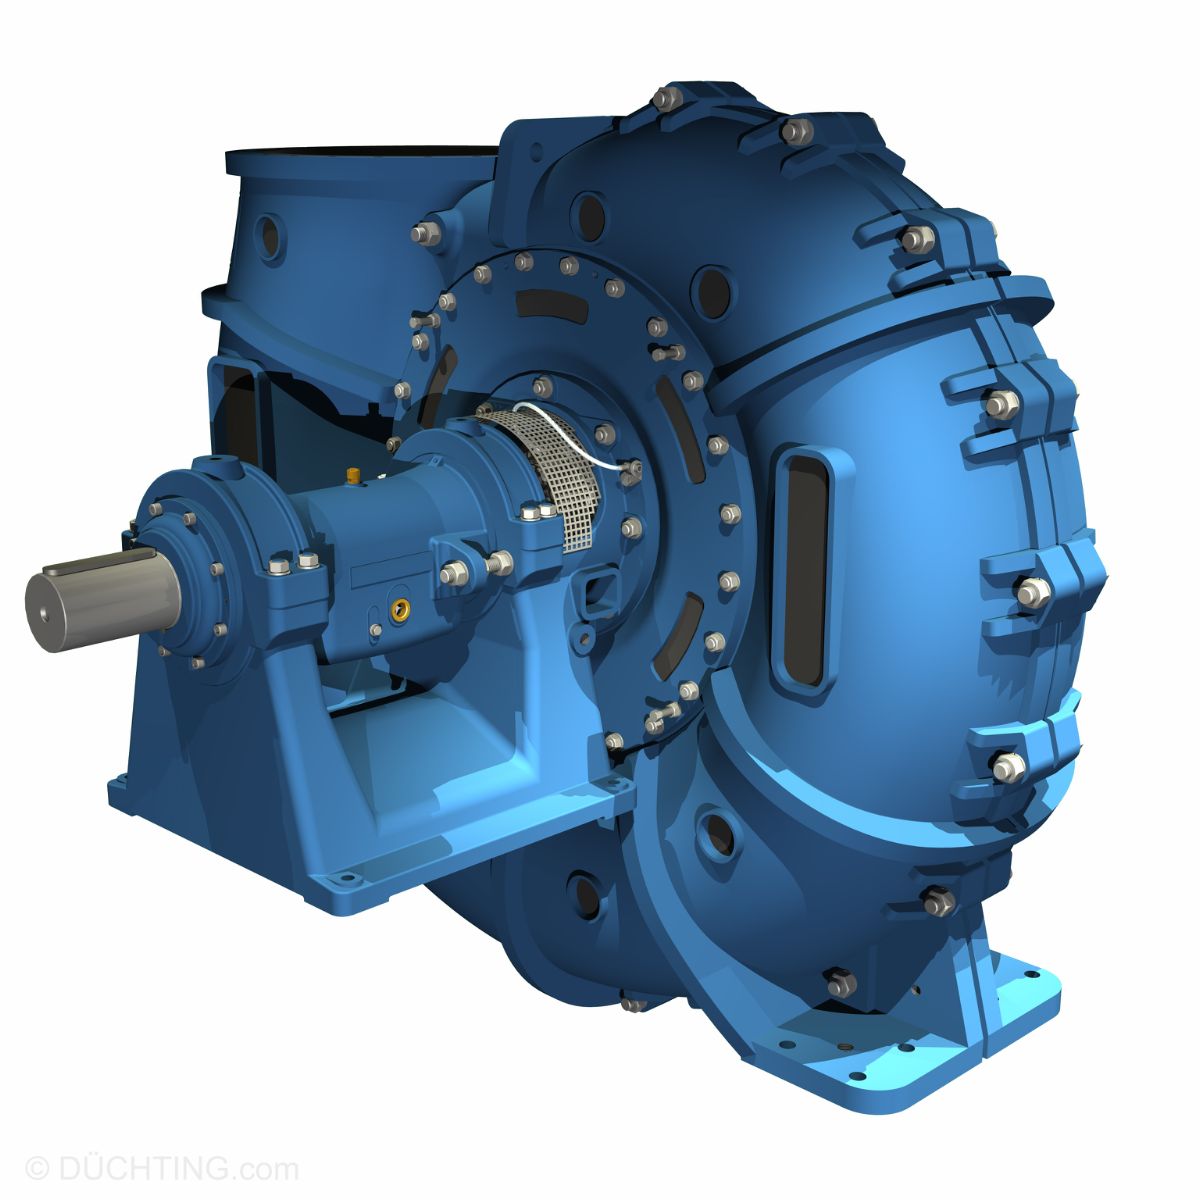 DÜCHTING MCC Serie | Industrial Pump Group